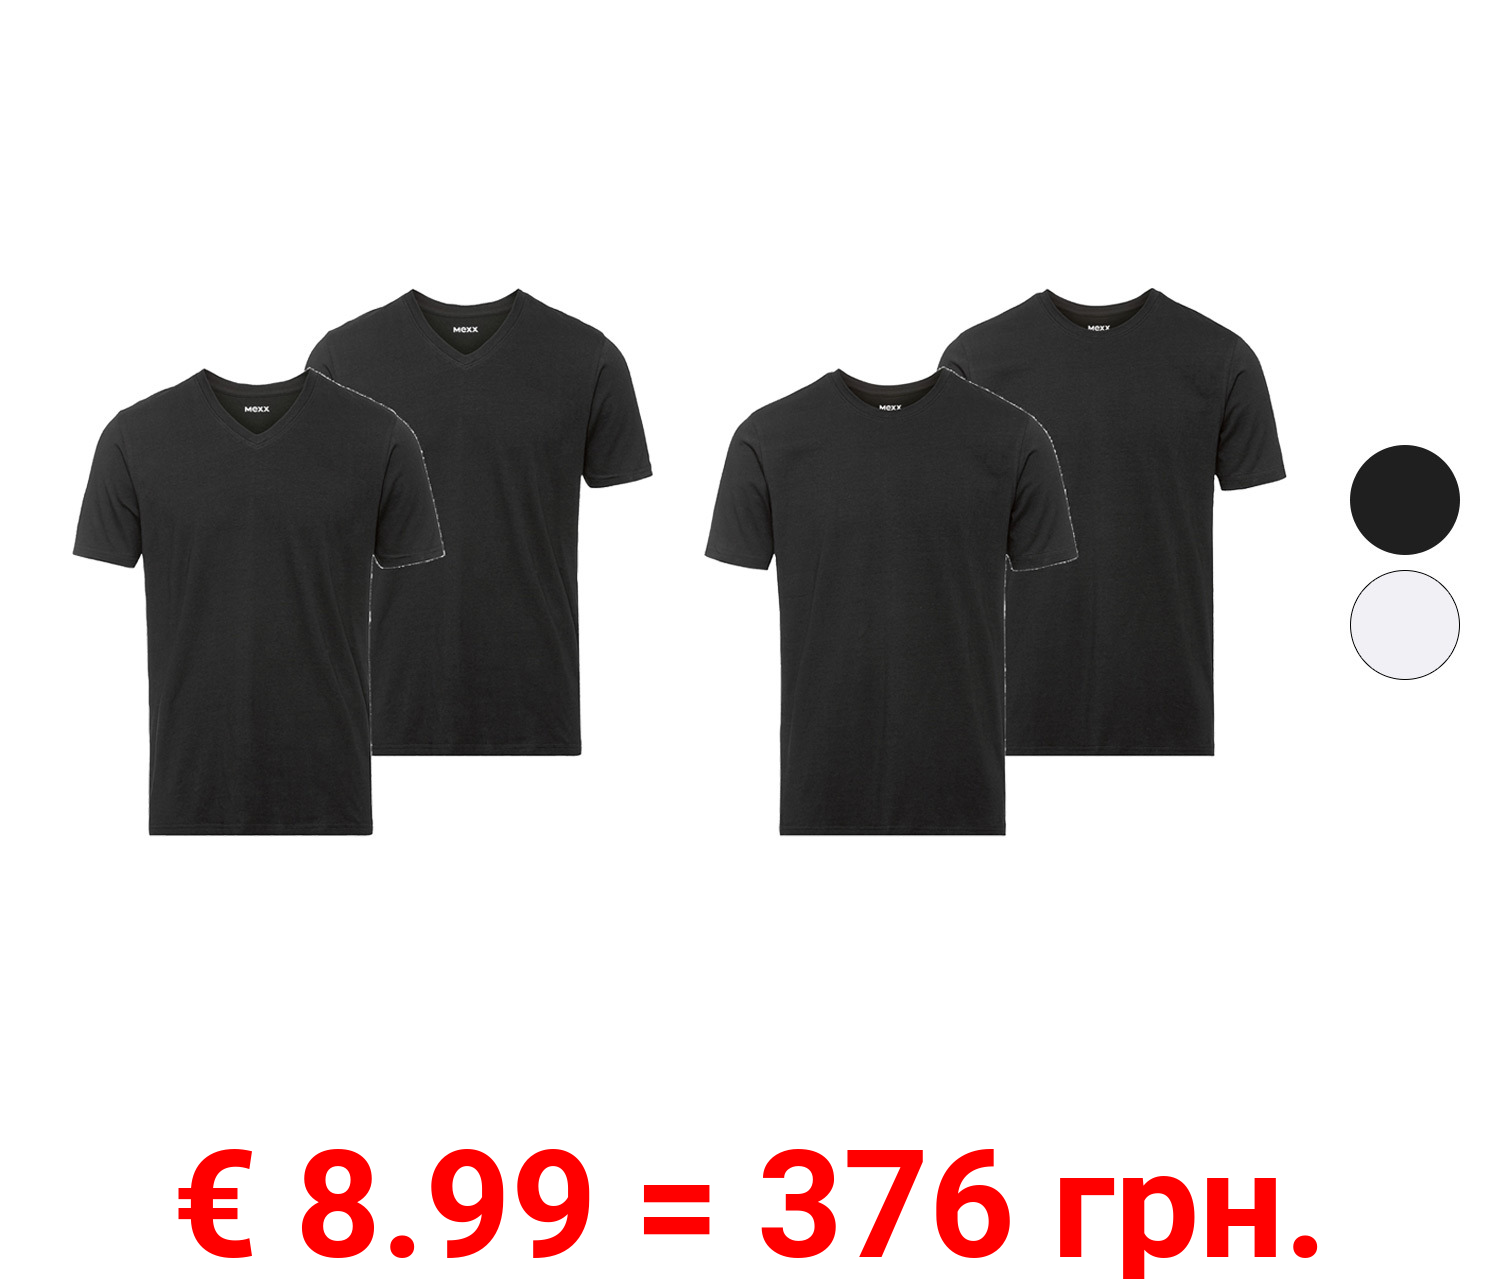 MEXX Herren Unterhemden-T-Shirts, 2 Stück, Regular Fit